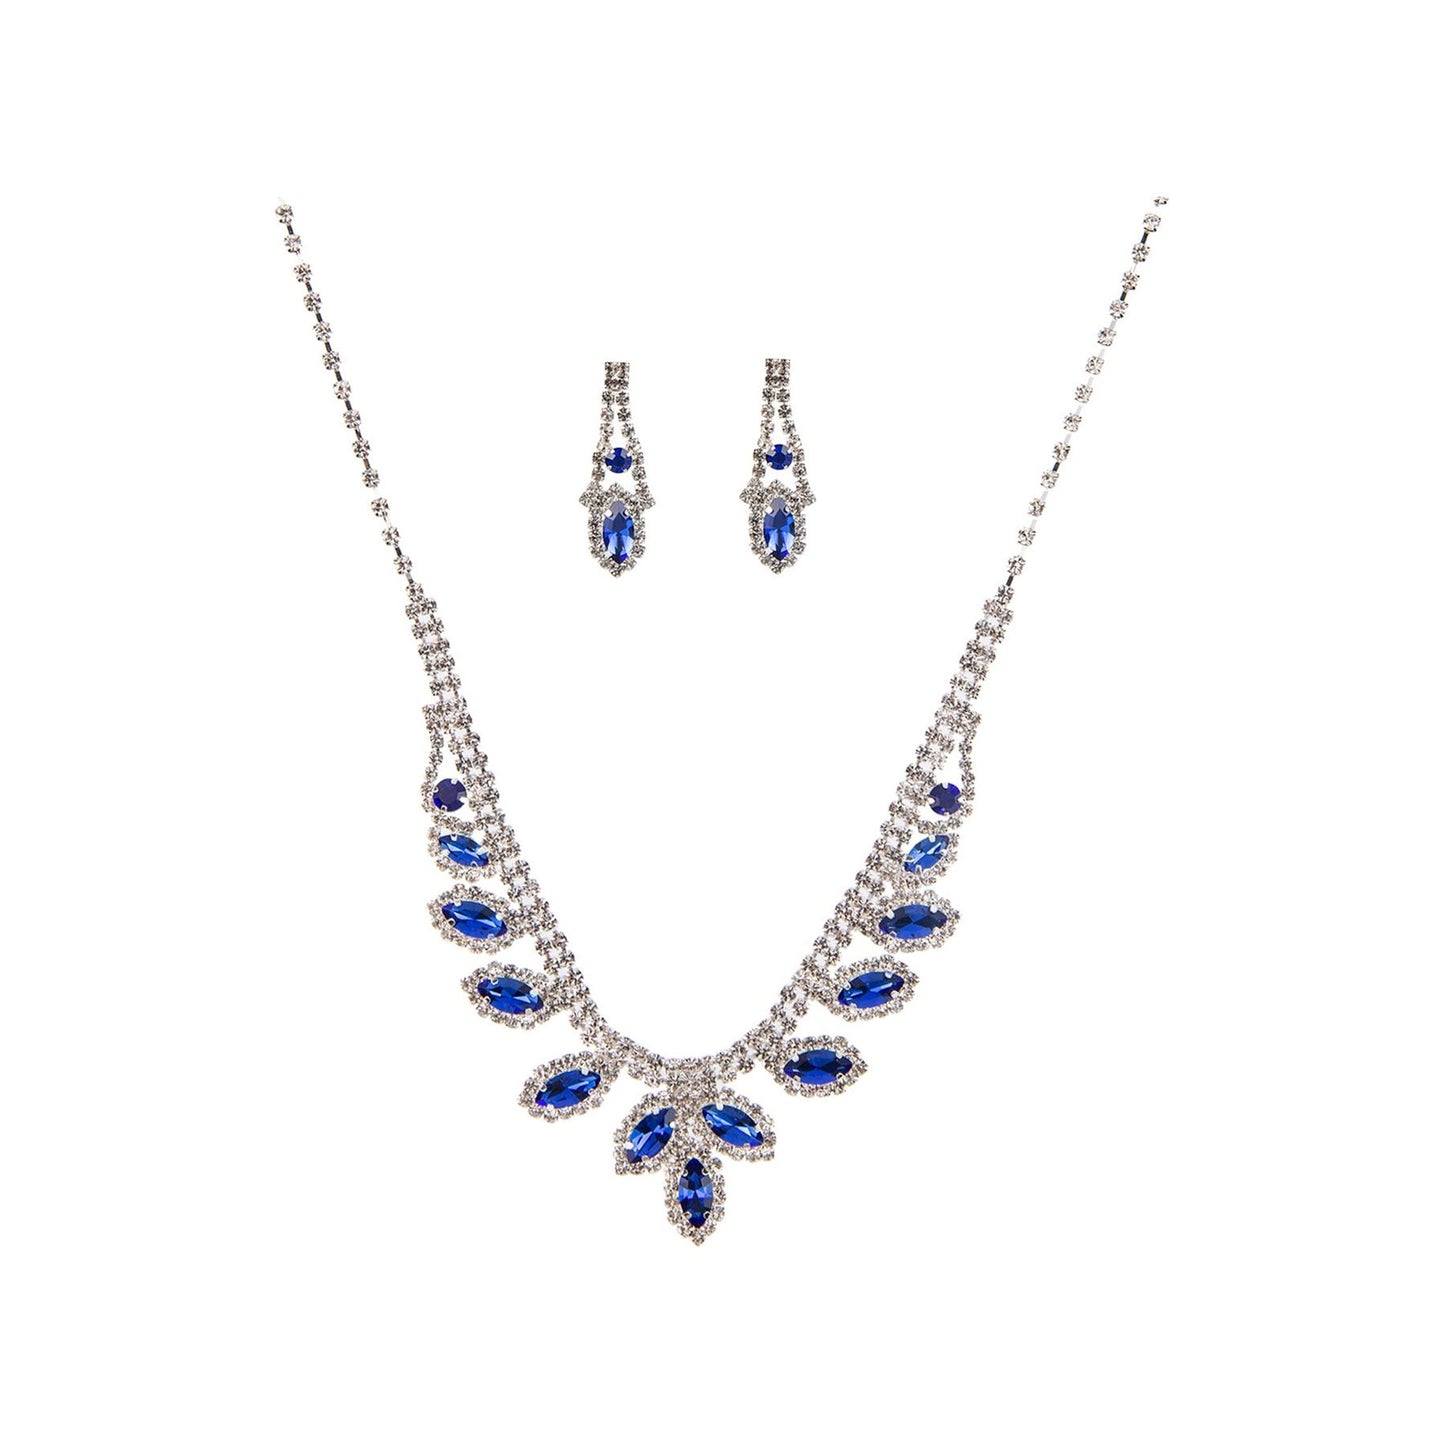 Rhinestone Marquise Wedding Necklace And Earring Set - TiffanyzKlozet